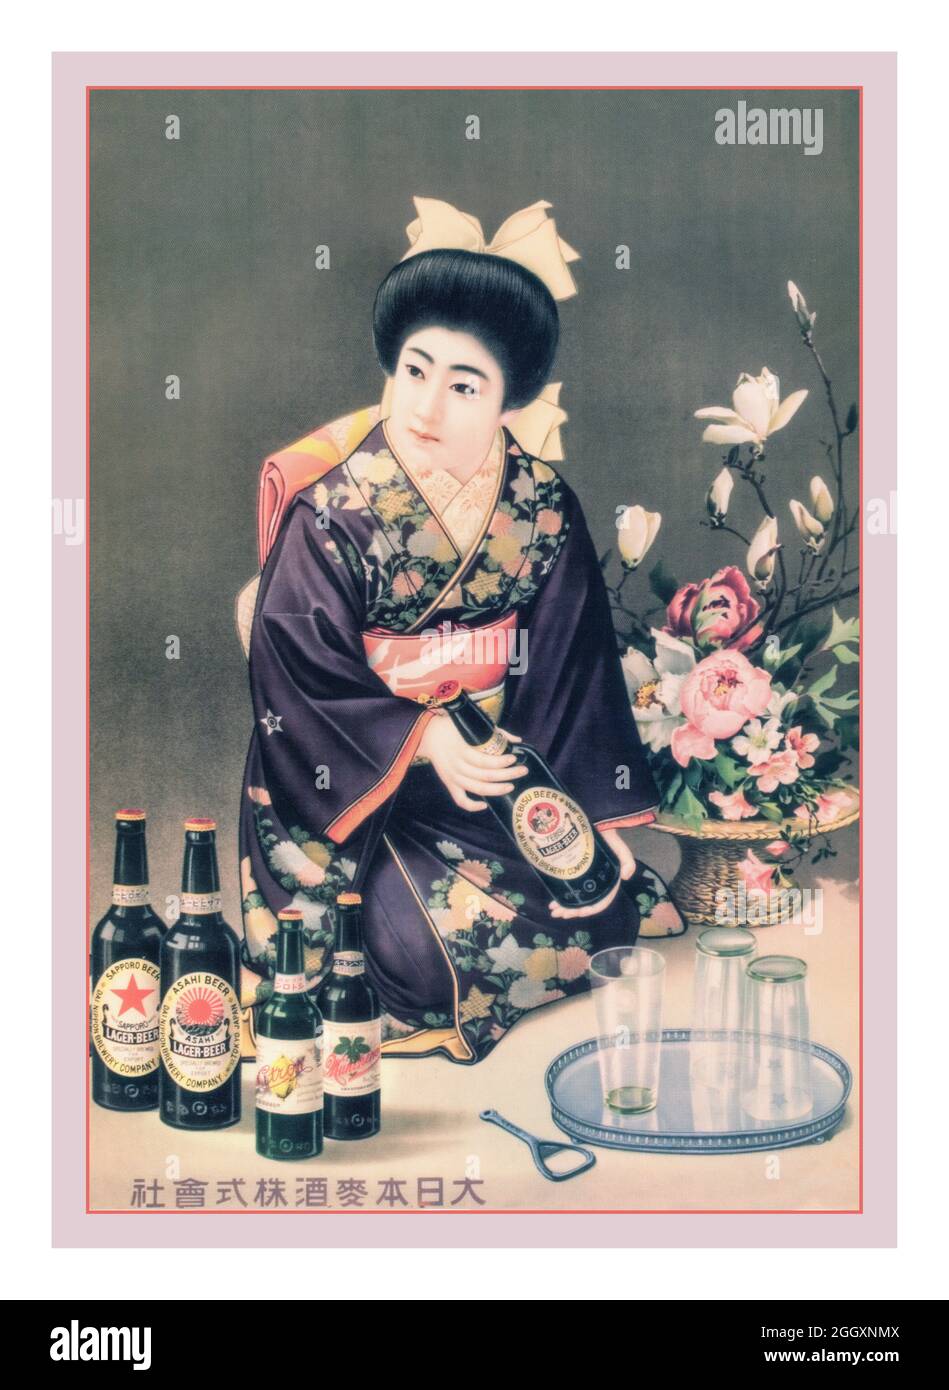 Japanische Asahi Beer-Werbeplakat aus den 1920er Jahren mit einem typischen Geisha-Mädchen, das eine Flasche Bier in Japan anbietet Stockfoto